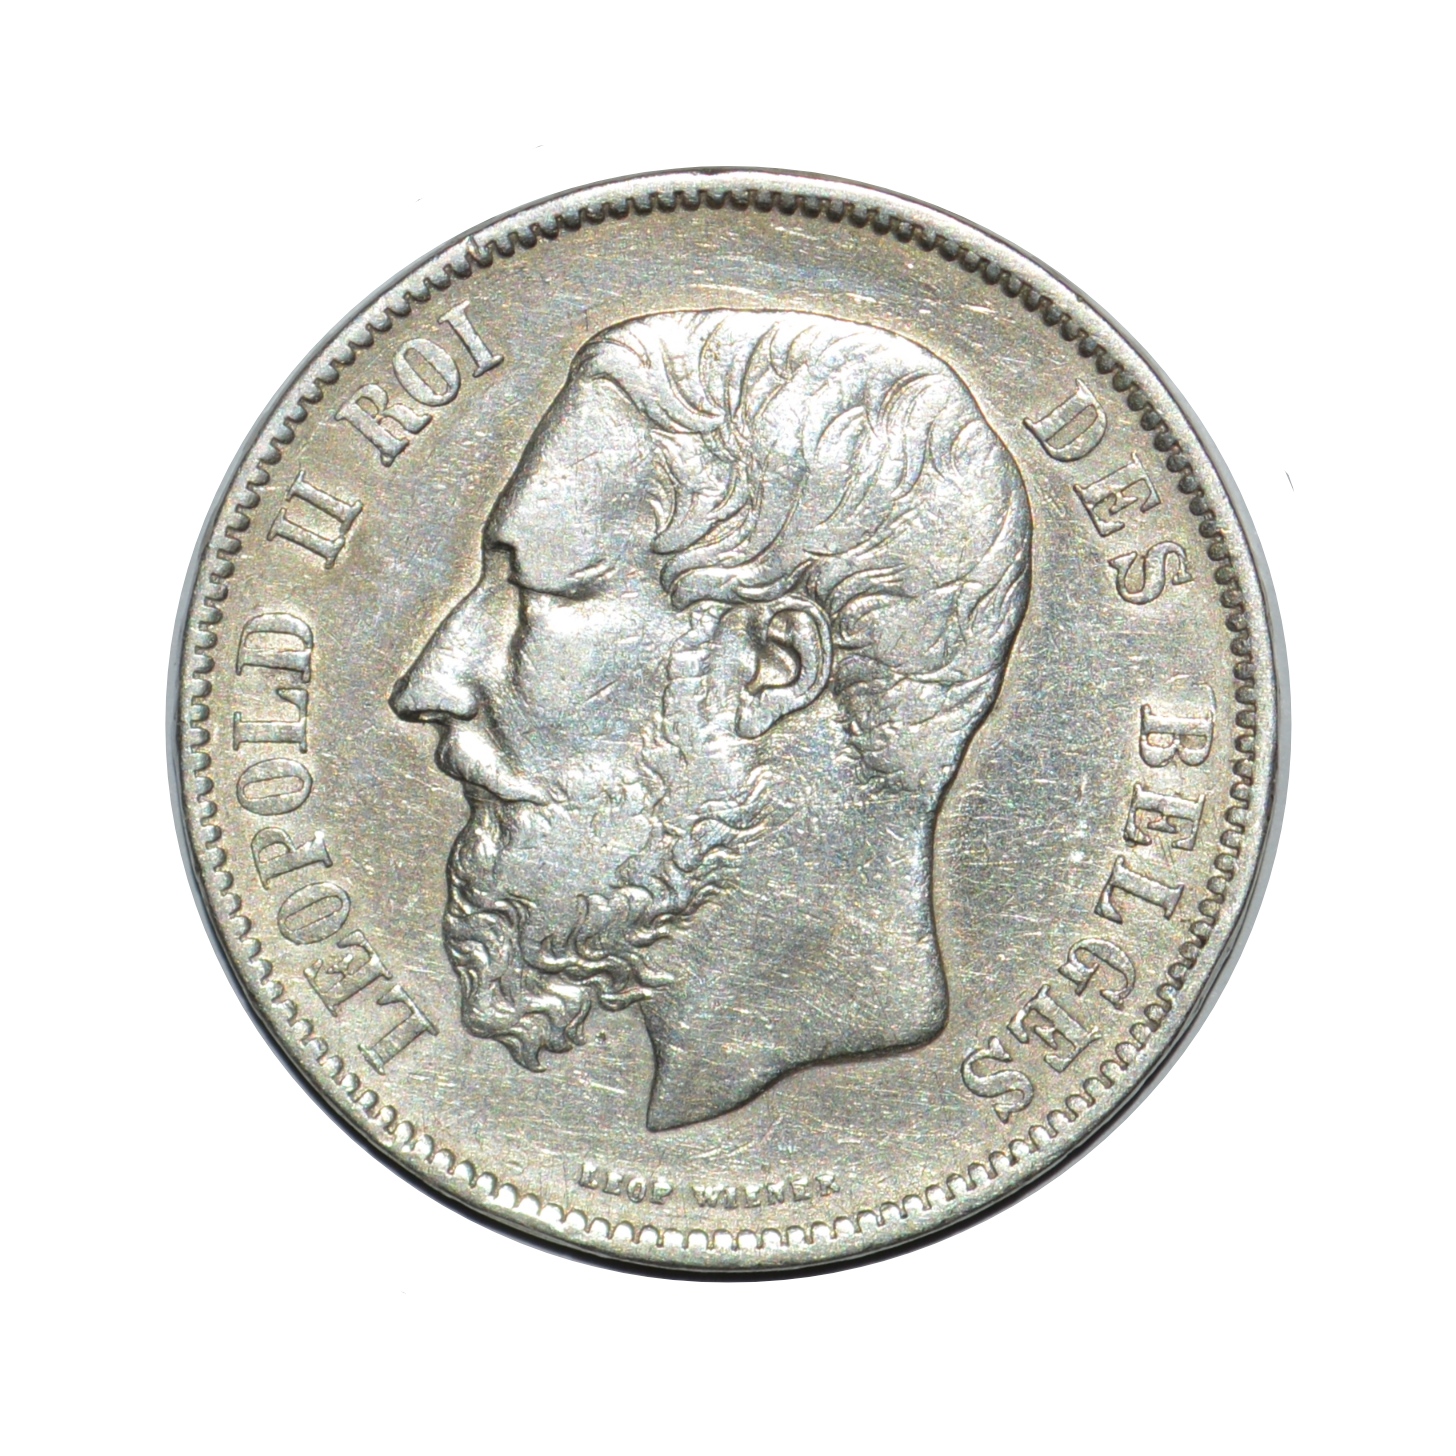 سکه تزیینی طرح کشور بلژیک مدل 5 فرانک 1871 میلادی